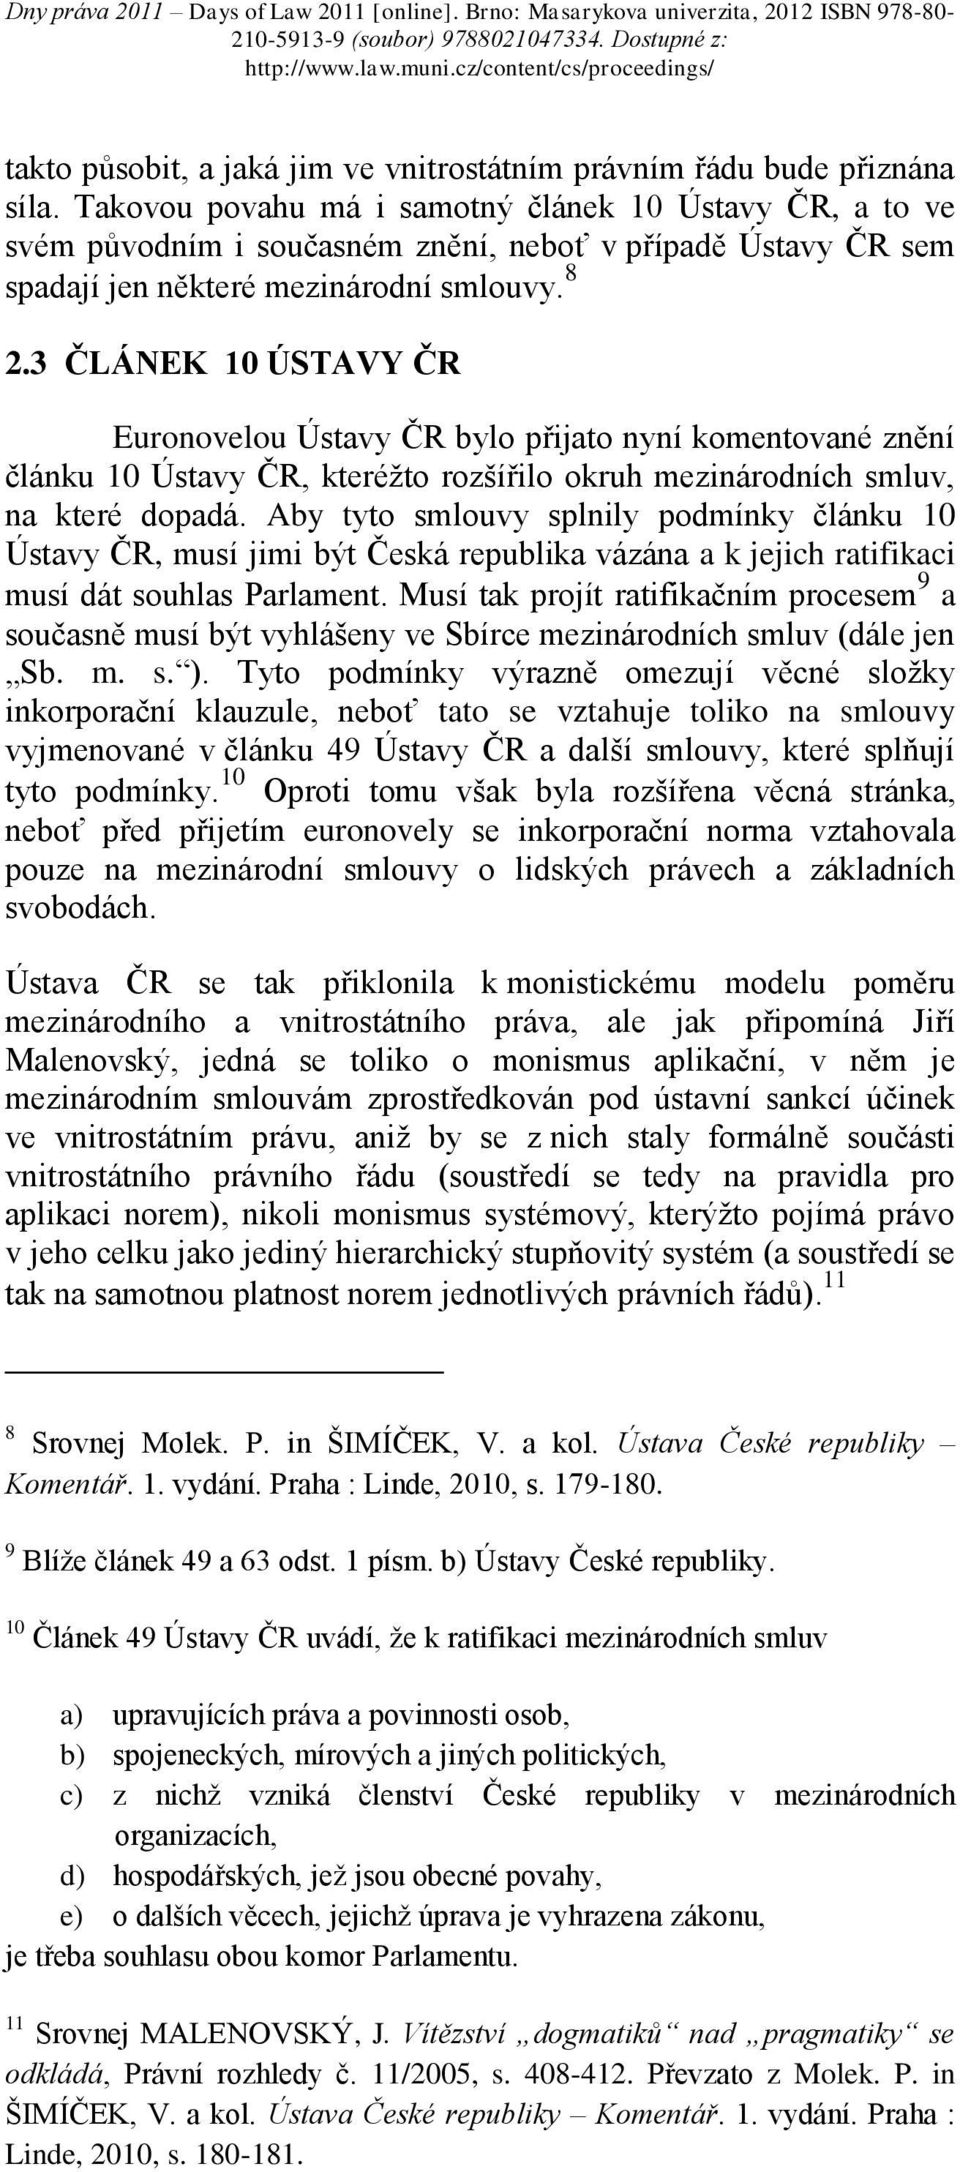 3 ČLÁNEK 10 ÚSTAVY ČR Euronovelou Ústavy ČR bylo přijato nyní komentované znění článku 10 Ústavy ČR, kteréžto rozšířilo okruh mezinárodních smluv, na které dopadá.